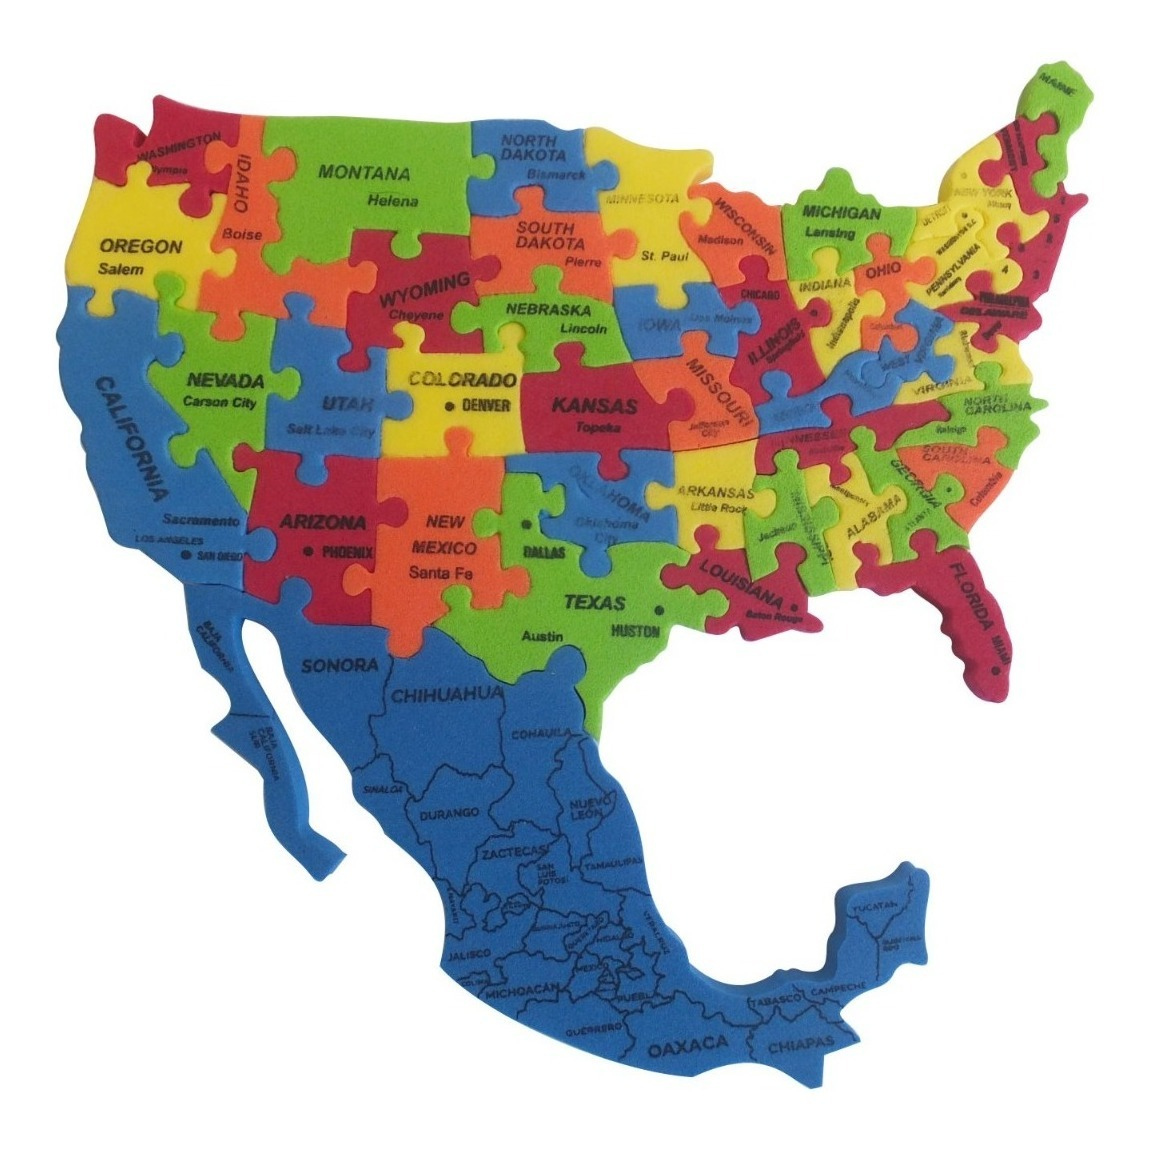 Rompecabezas Mapa Foamy Mexico Estados Unidos 19 X 19 Cm 36 00 En 